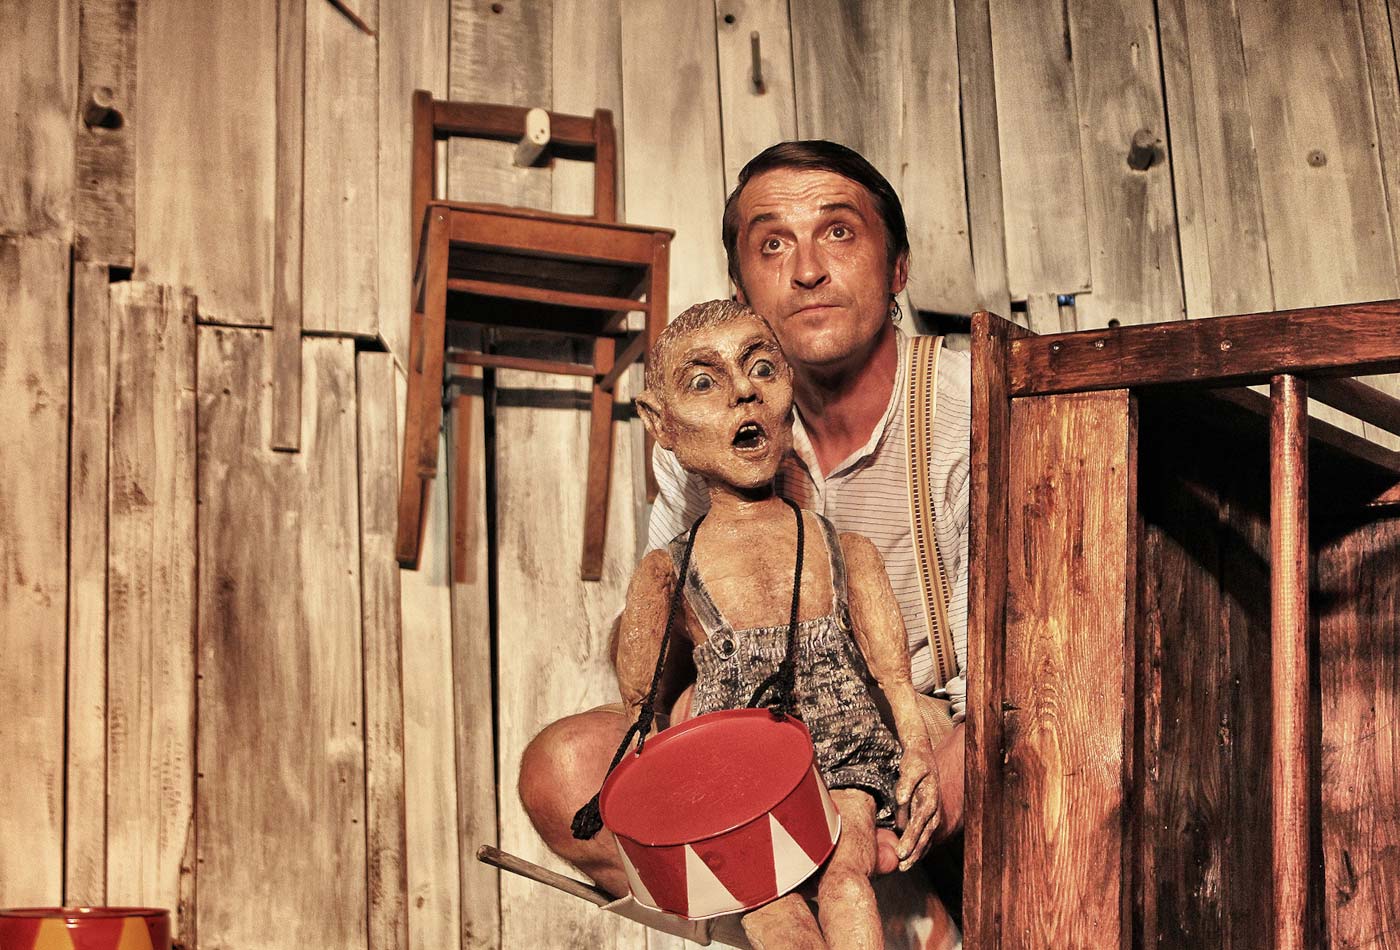 EIn Schauspieler steht mit einer Puppe in der Hand auf eienr Bühne.